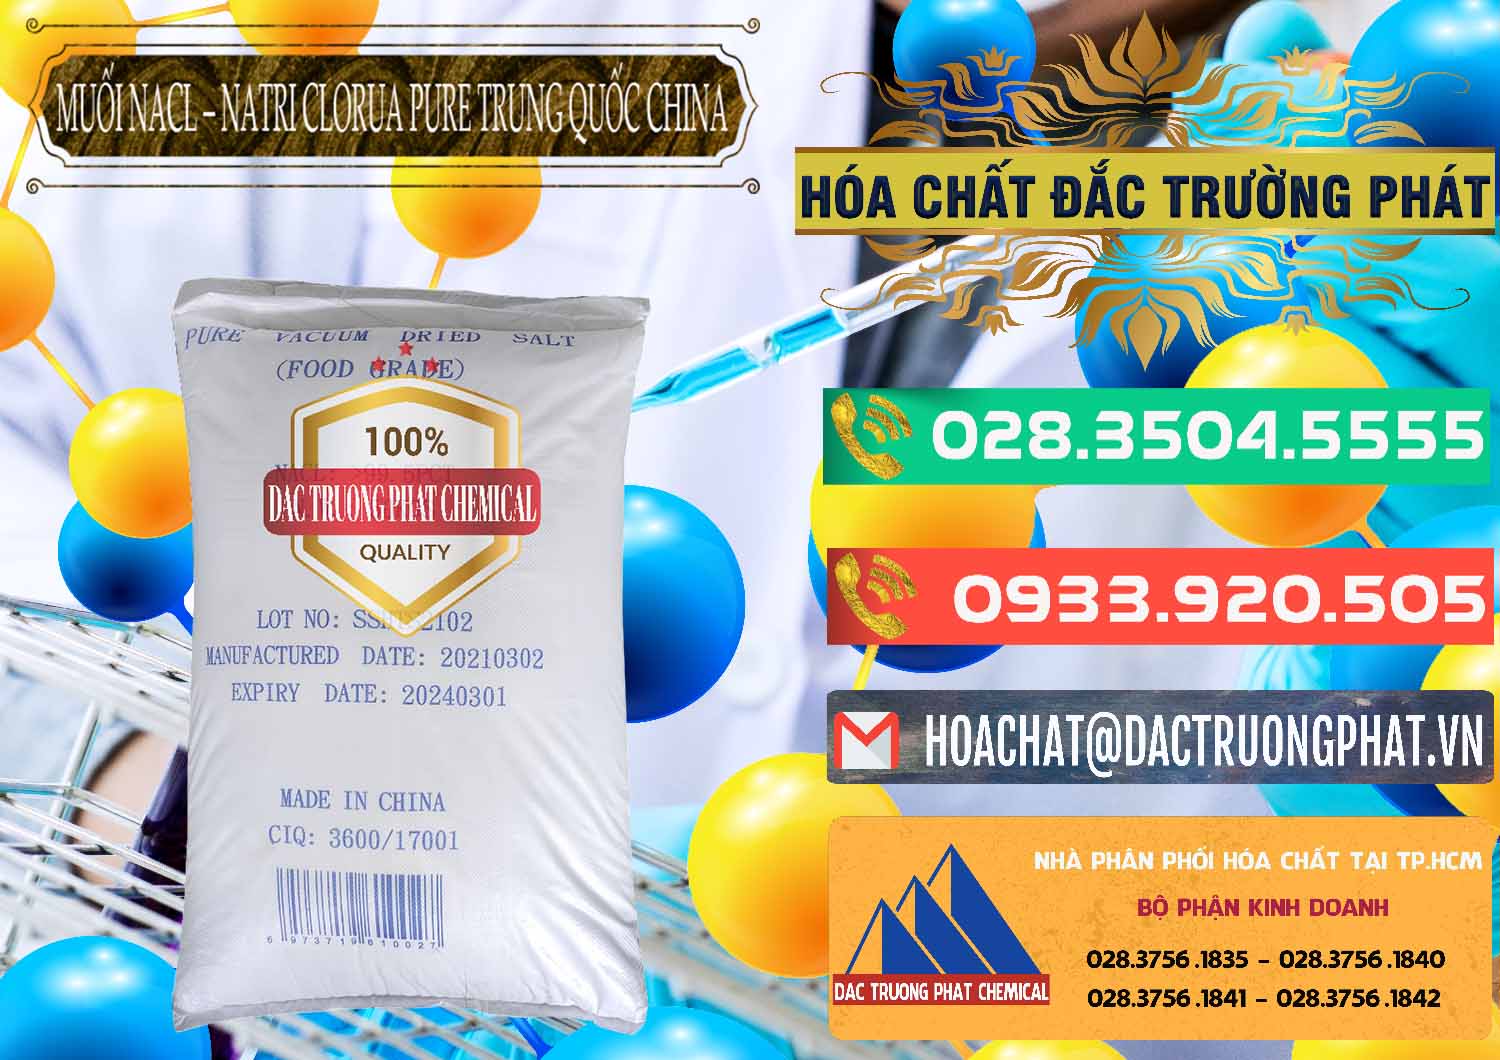 Cty chuyên bán _ cung cấp Muối NaCL – Sodium Chloride Pure Trung Quốc China - 0230 - Đơn vị kinh doanh và cung cấp hóa chất tại TP.HCM - congtyhoachat.com.vn